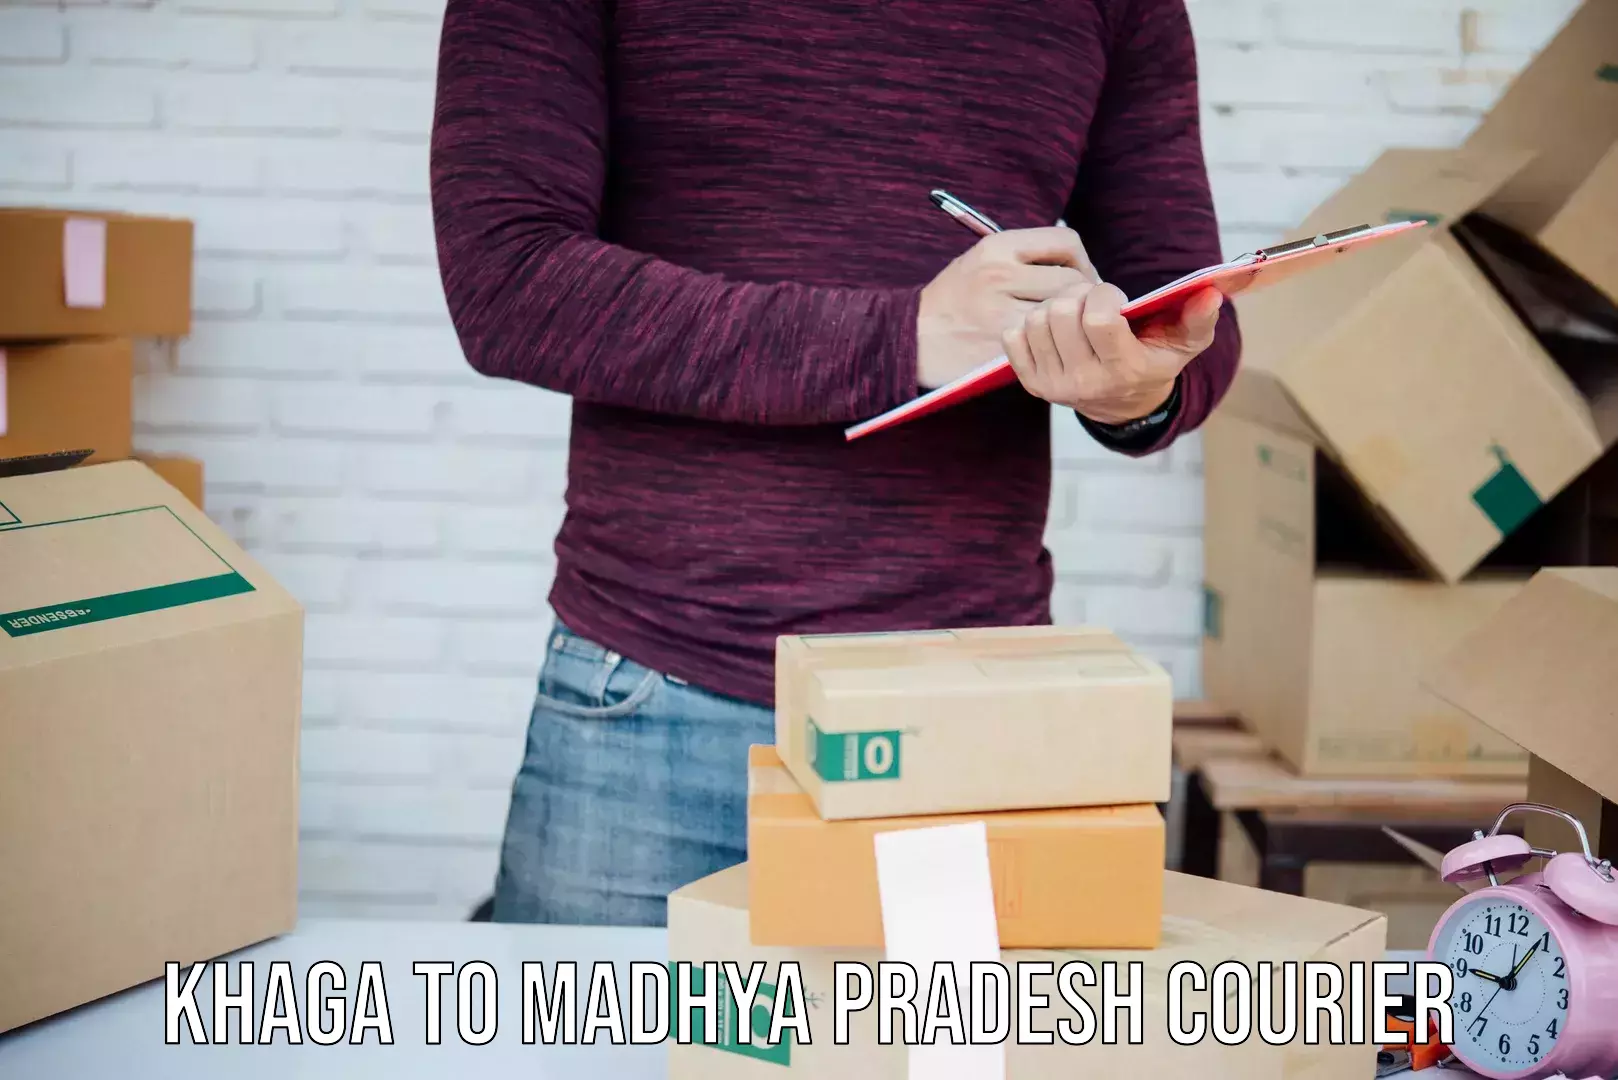 Fragile item shipping Khaga to Madhya Pradesh